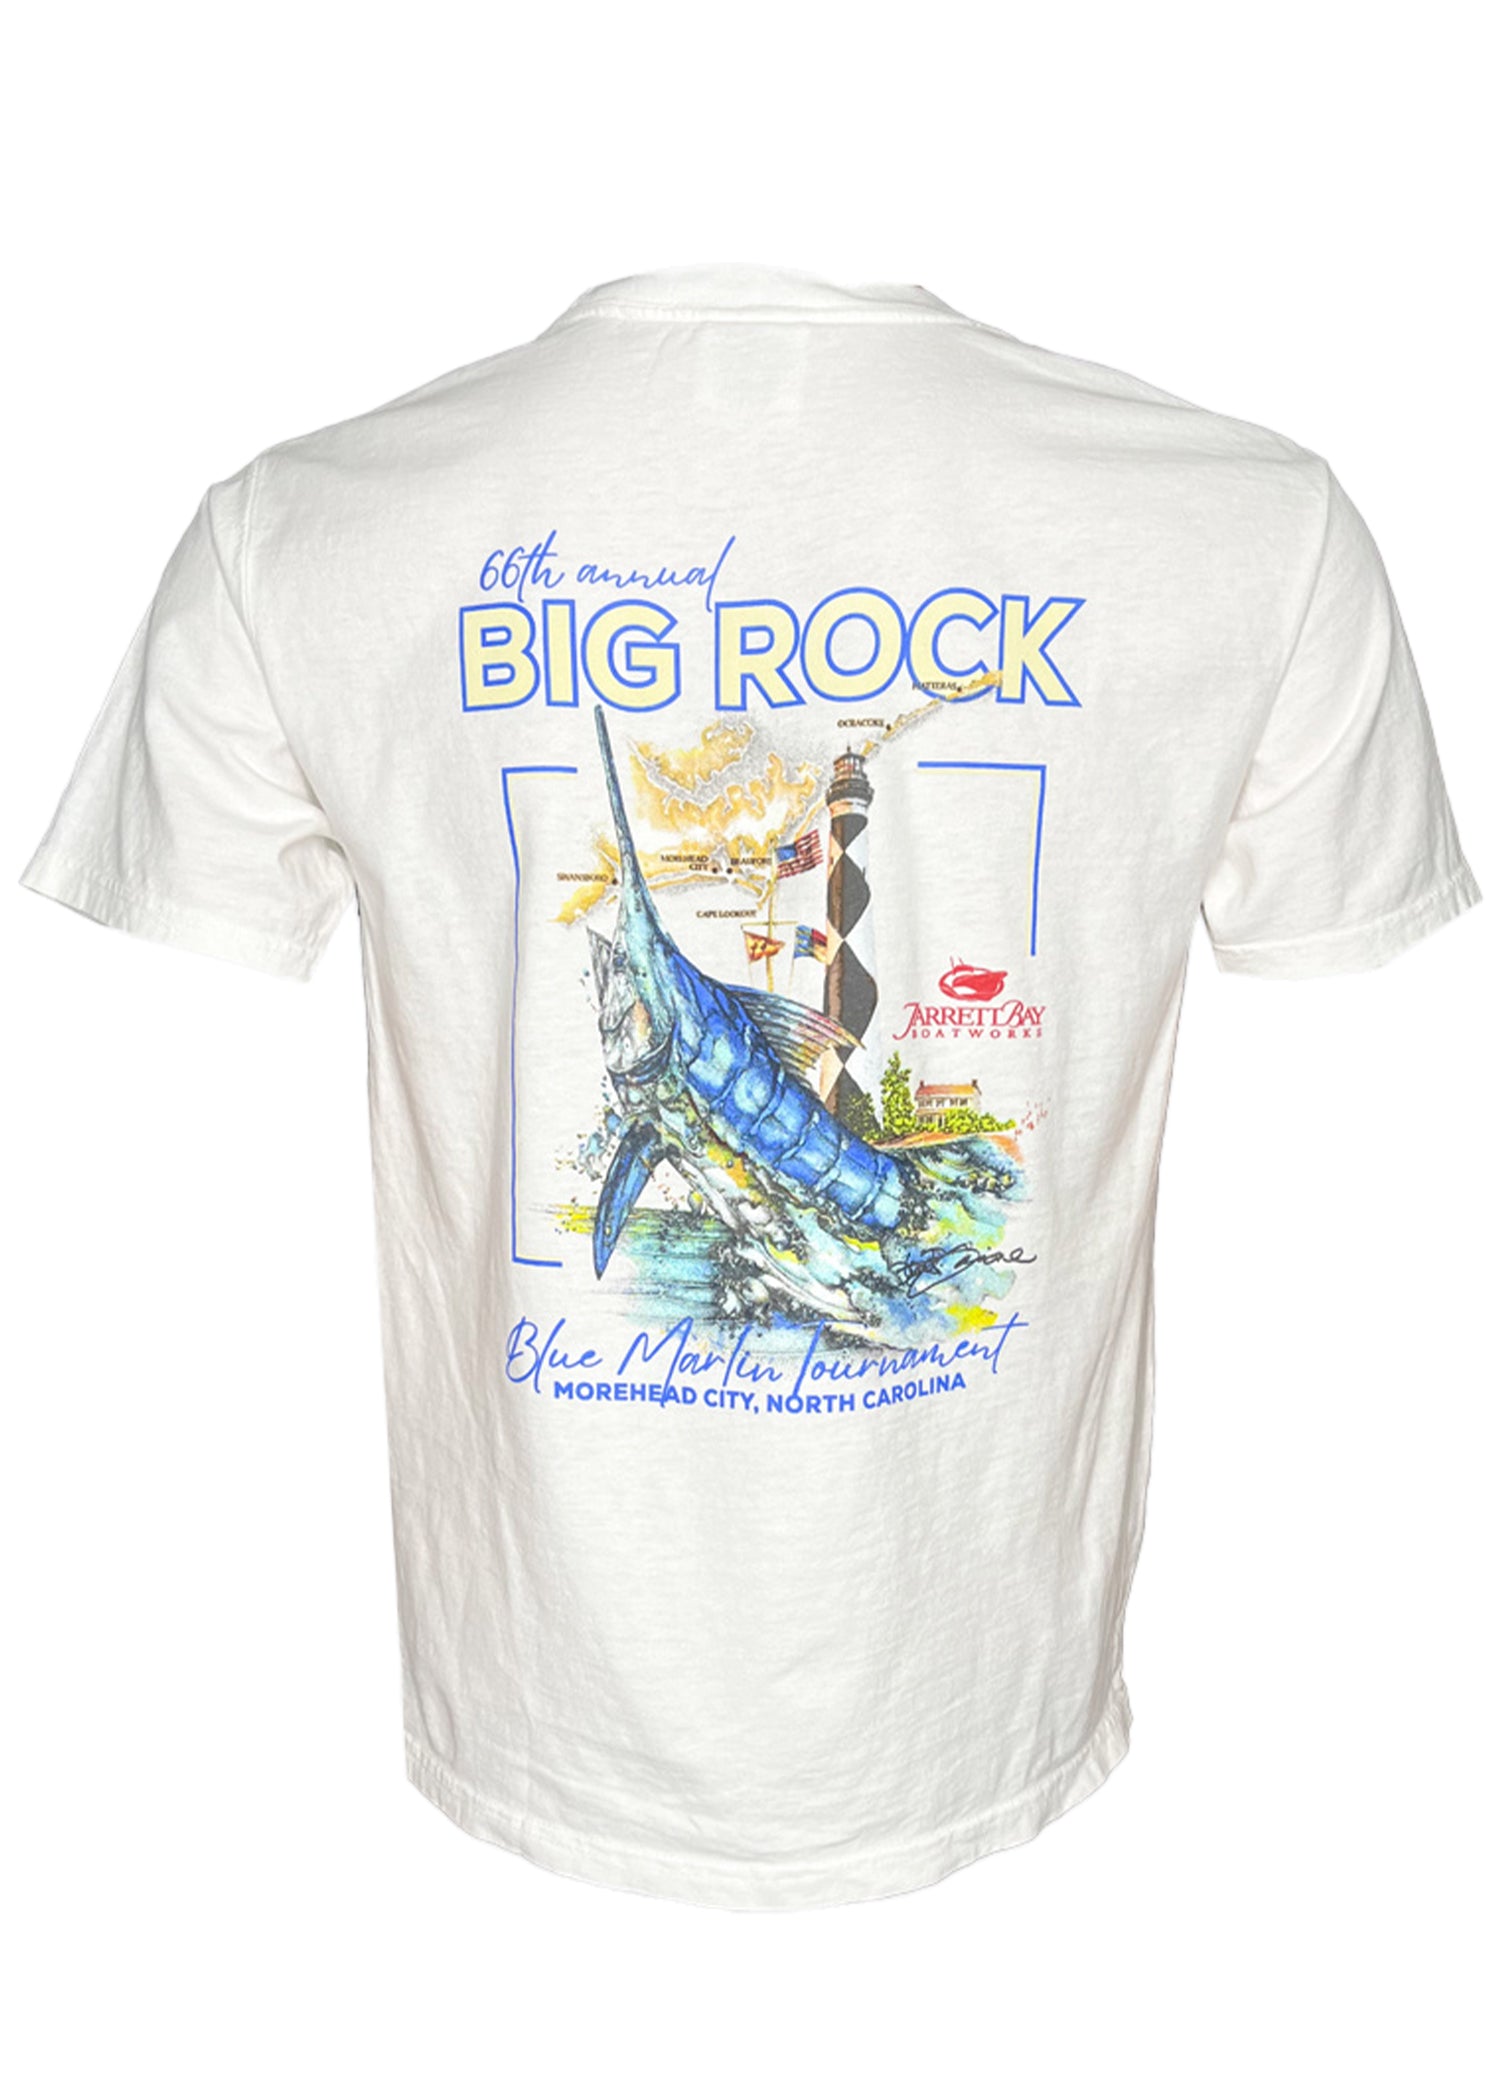 66th Annual Big Rock Blue Marlin Tournament T-Shirt White / 3X